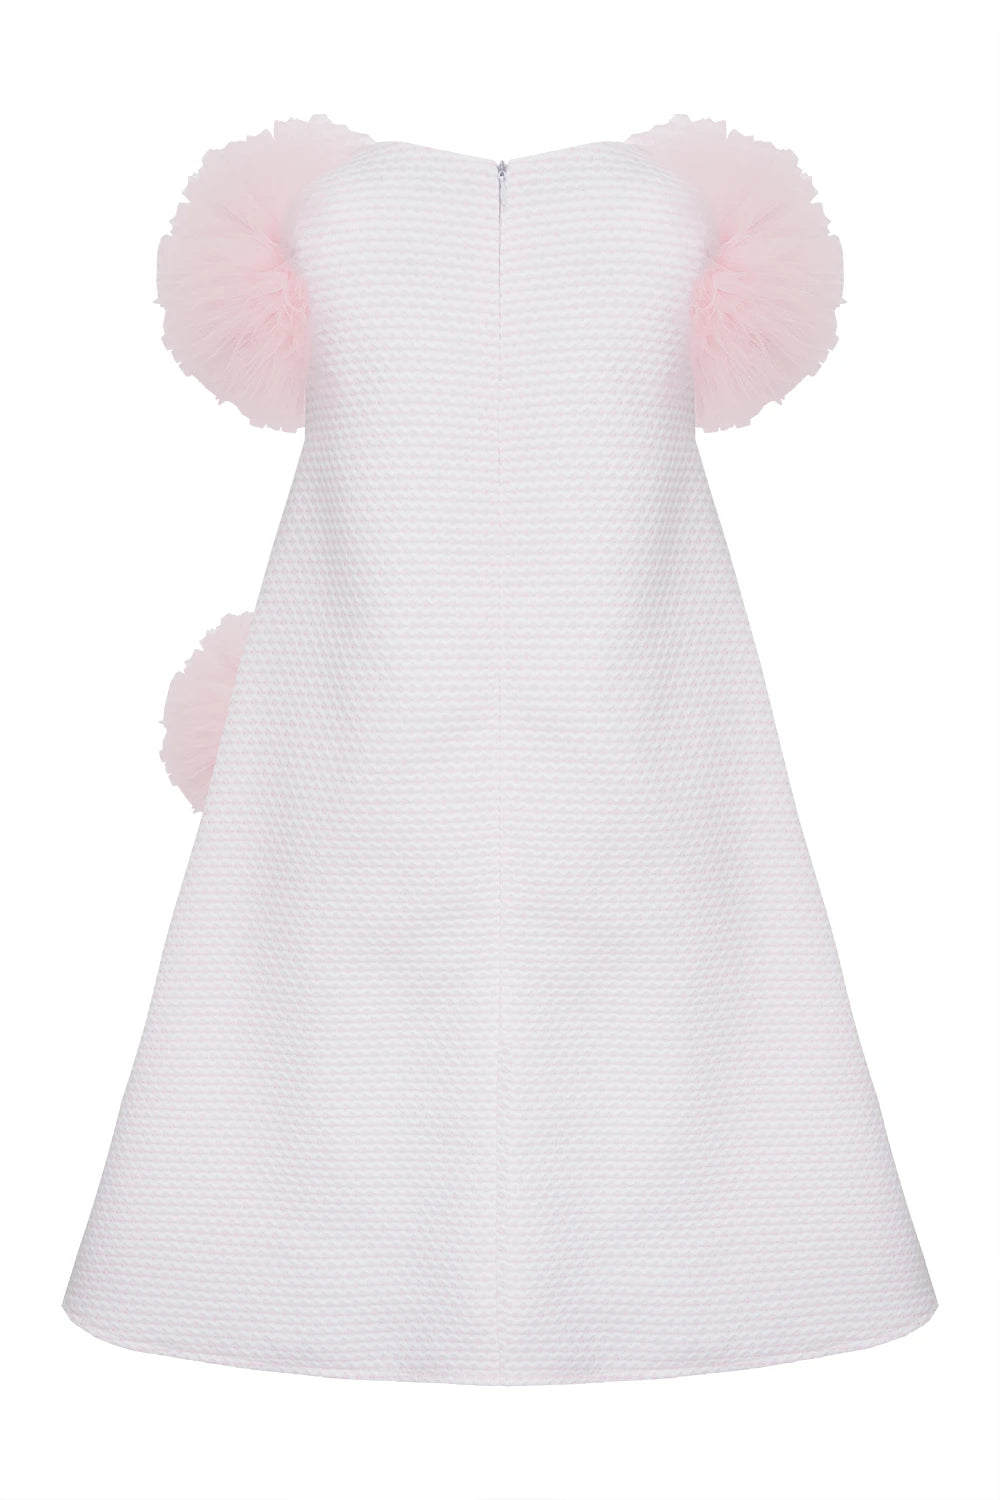 Pomrosette Dress